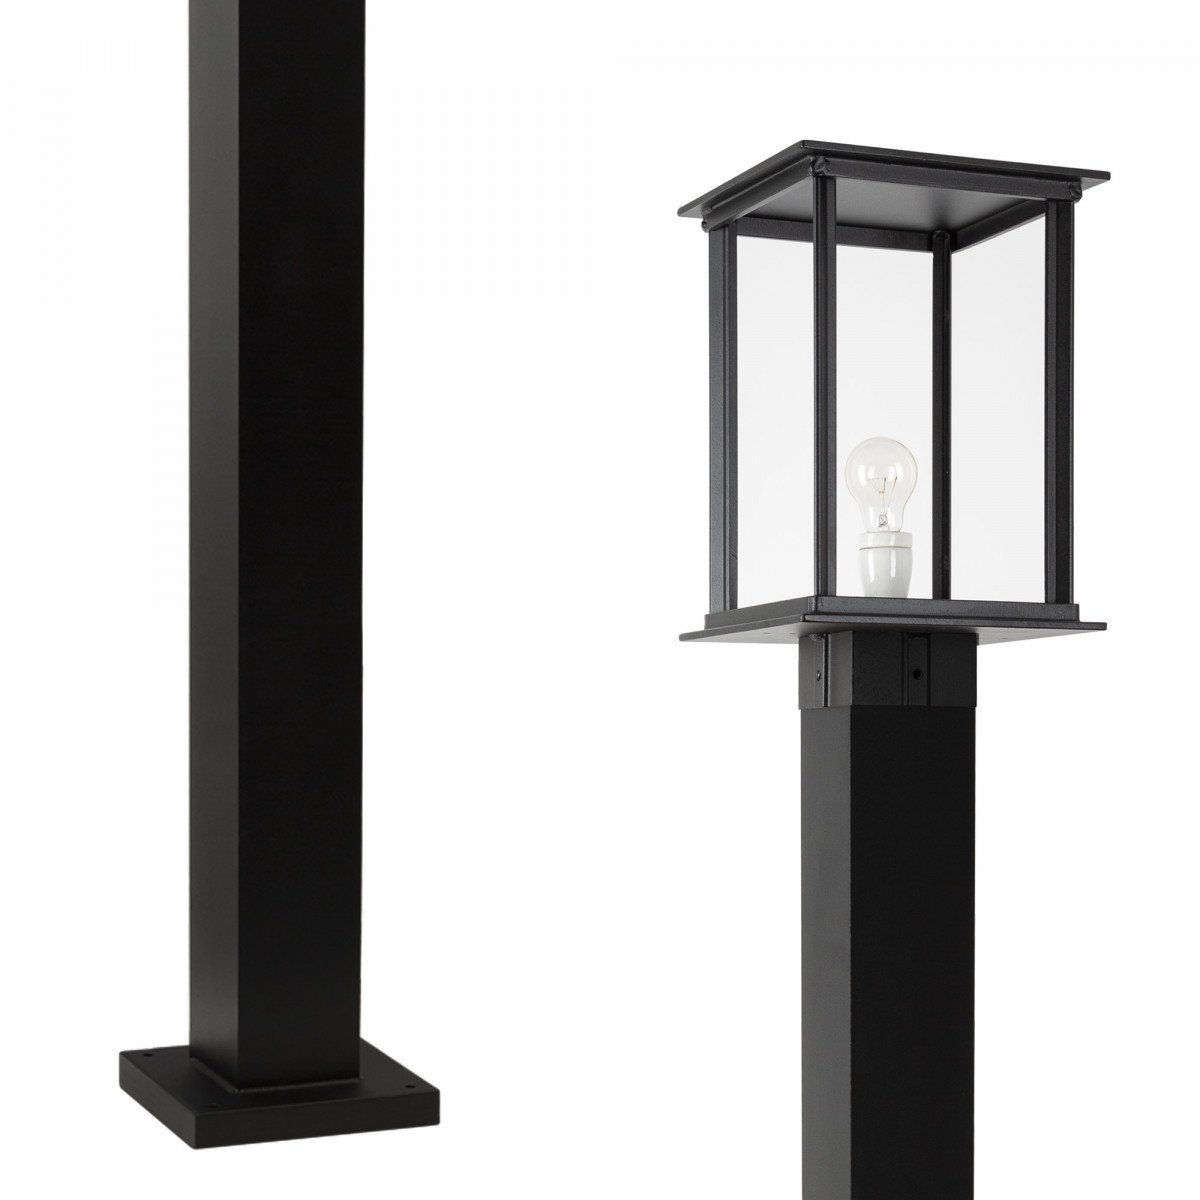 Buitenverlichting Vondel Lantaarn buitenlamp zwart in klassieke stijl met vierkante vorm